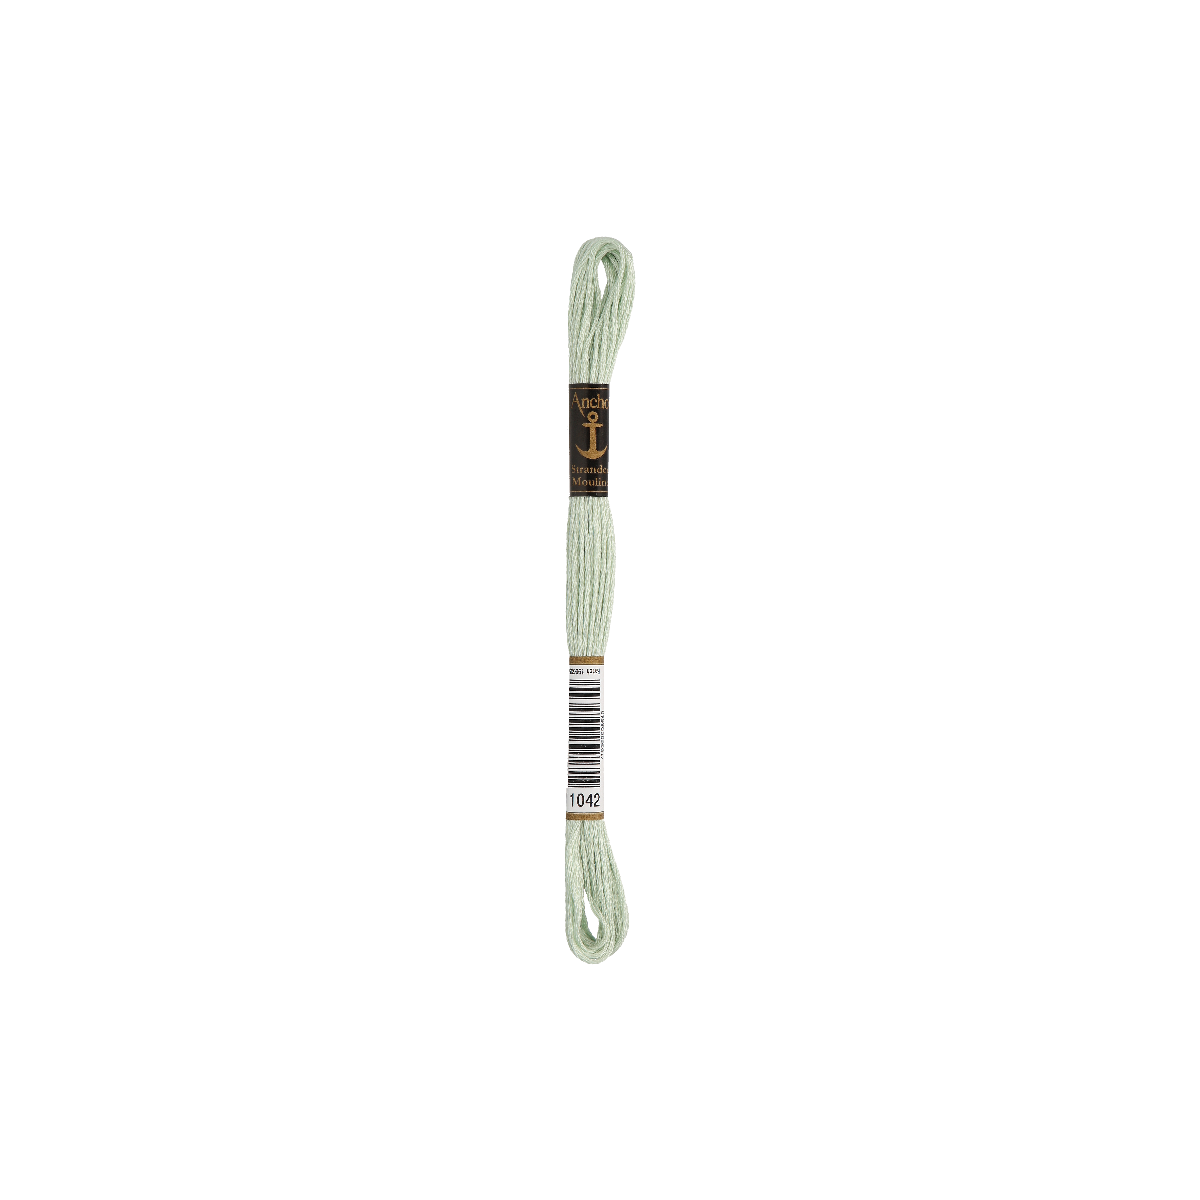 Anchor мулине 8m, бледно-зелёный, Хлопок,  цвет 1042,...